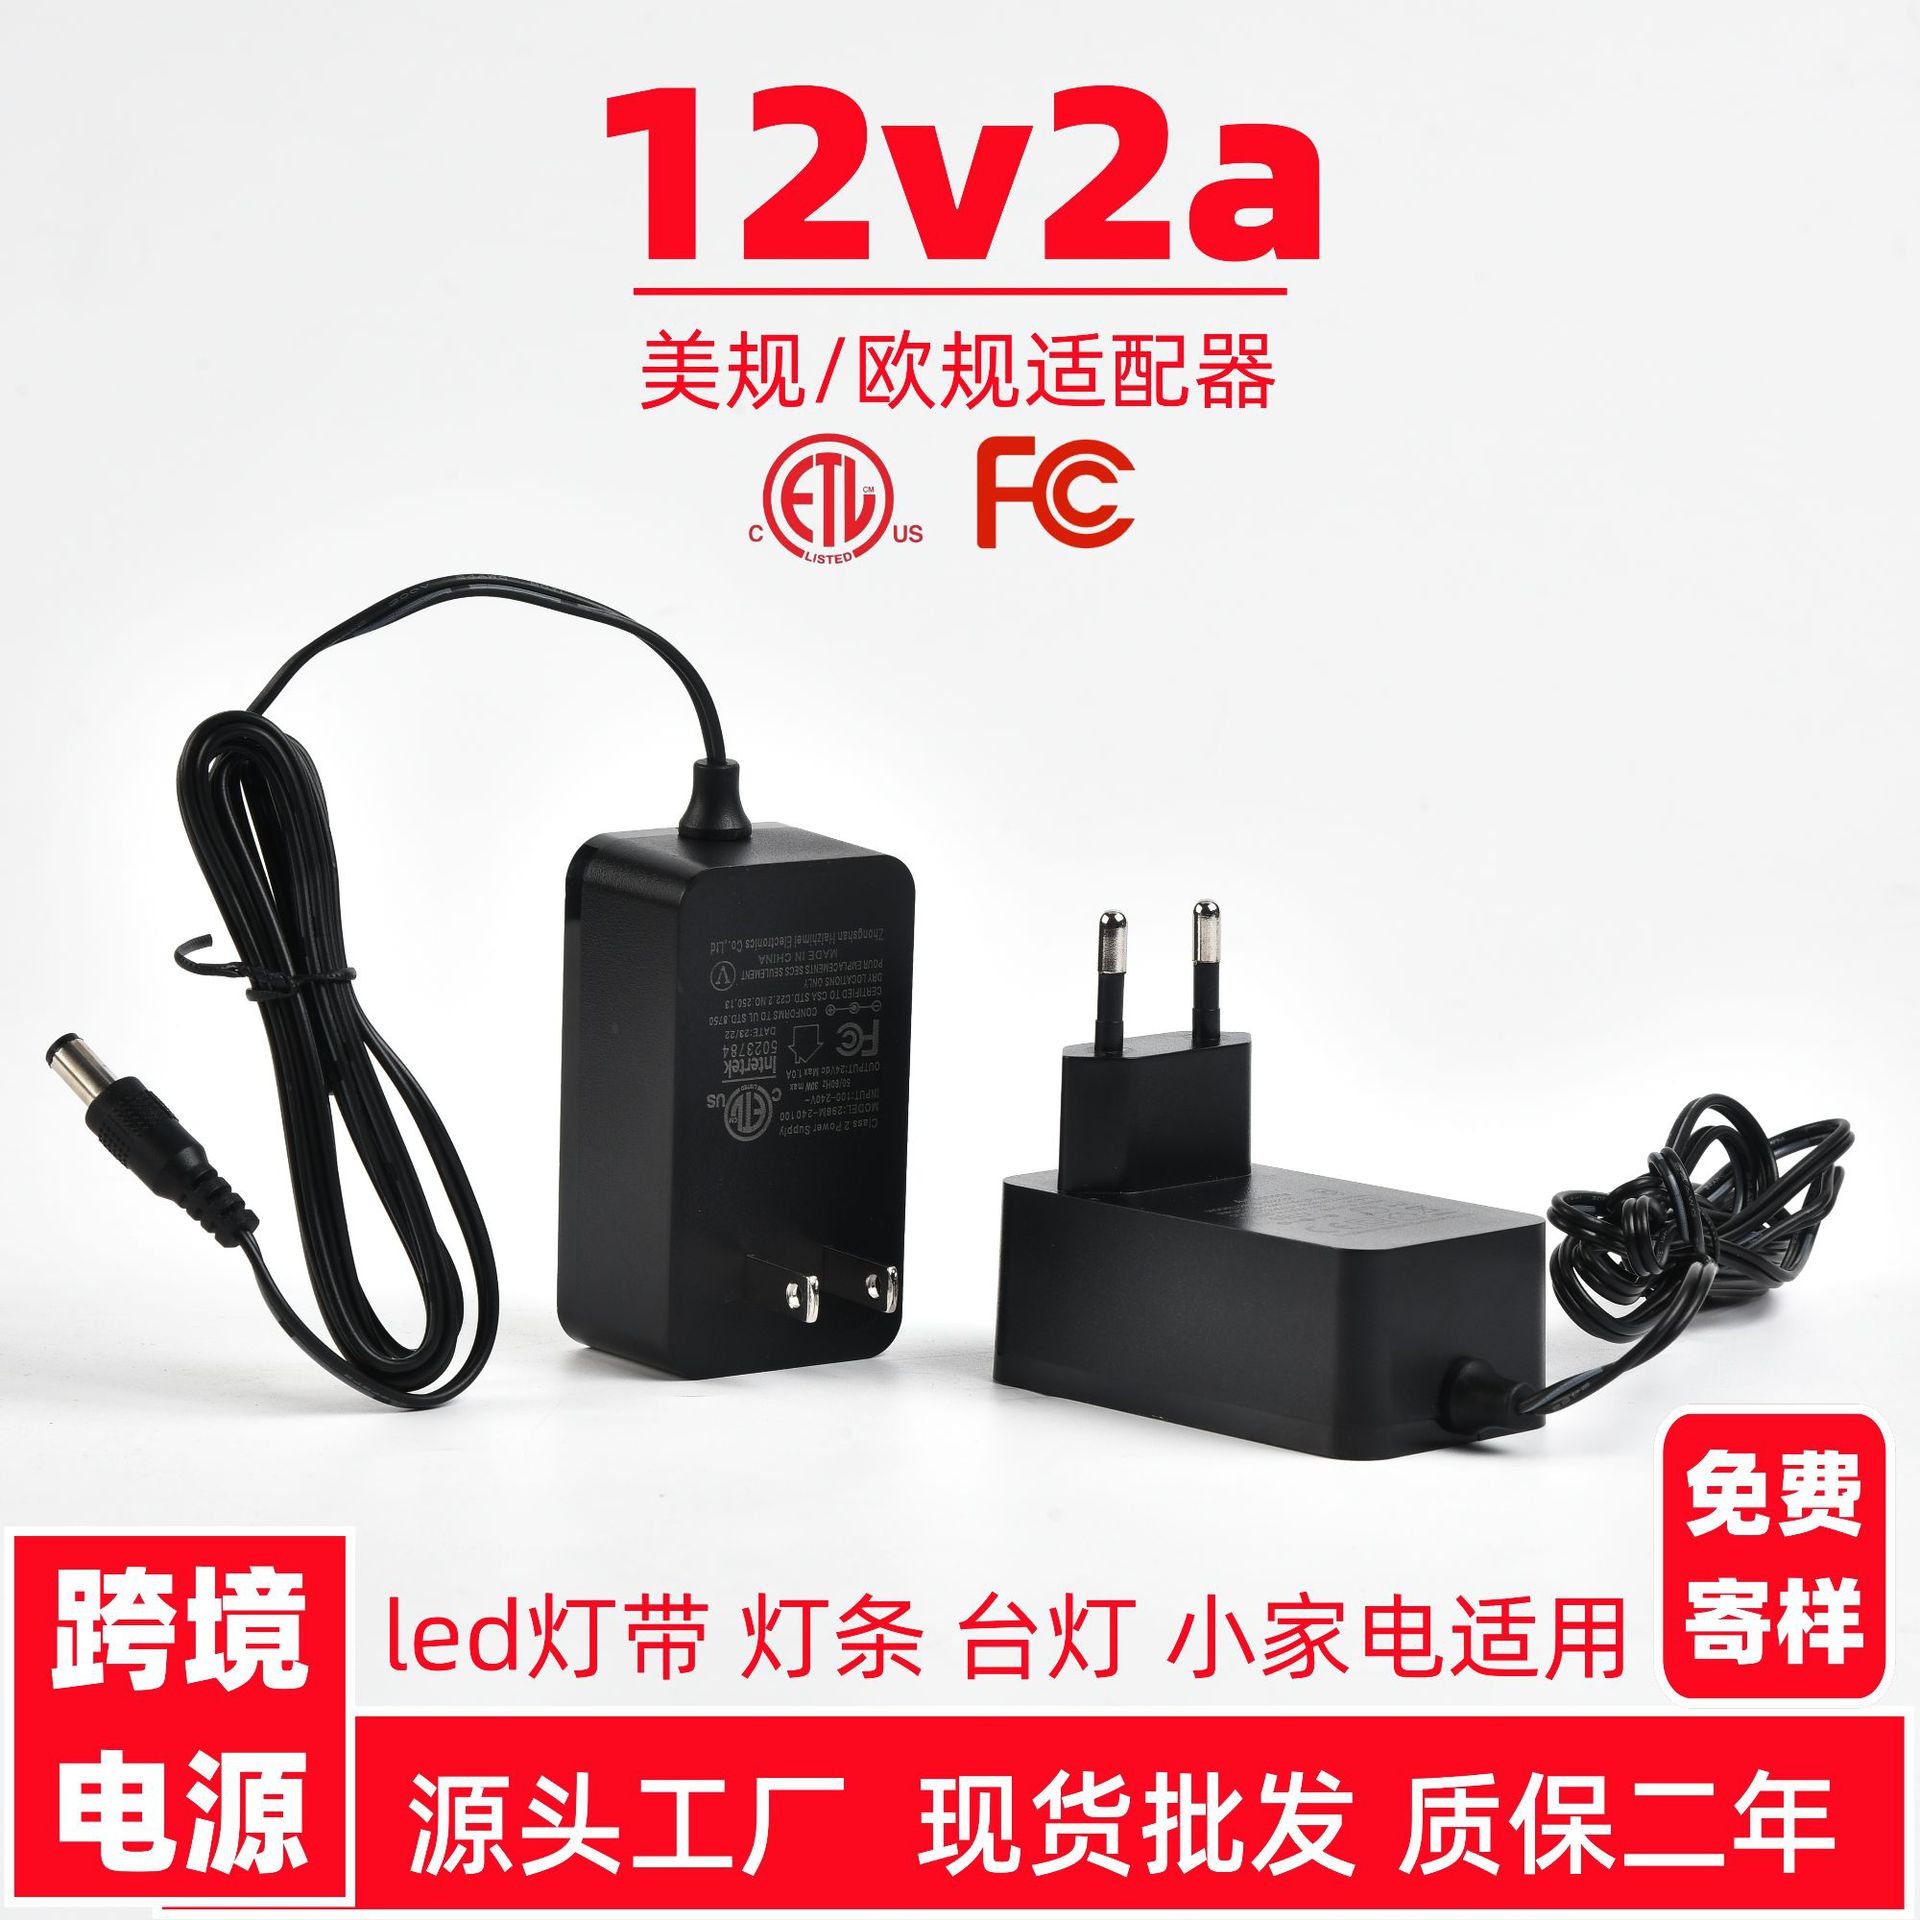 12v2a电源适配器美规欧规通用充电器插墙24v1a灯带台灯电源适配器